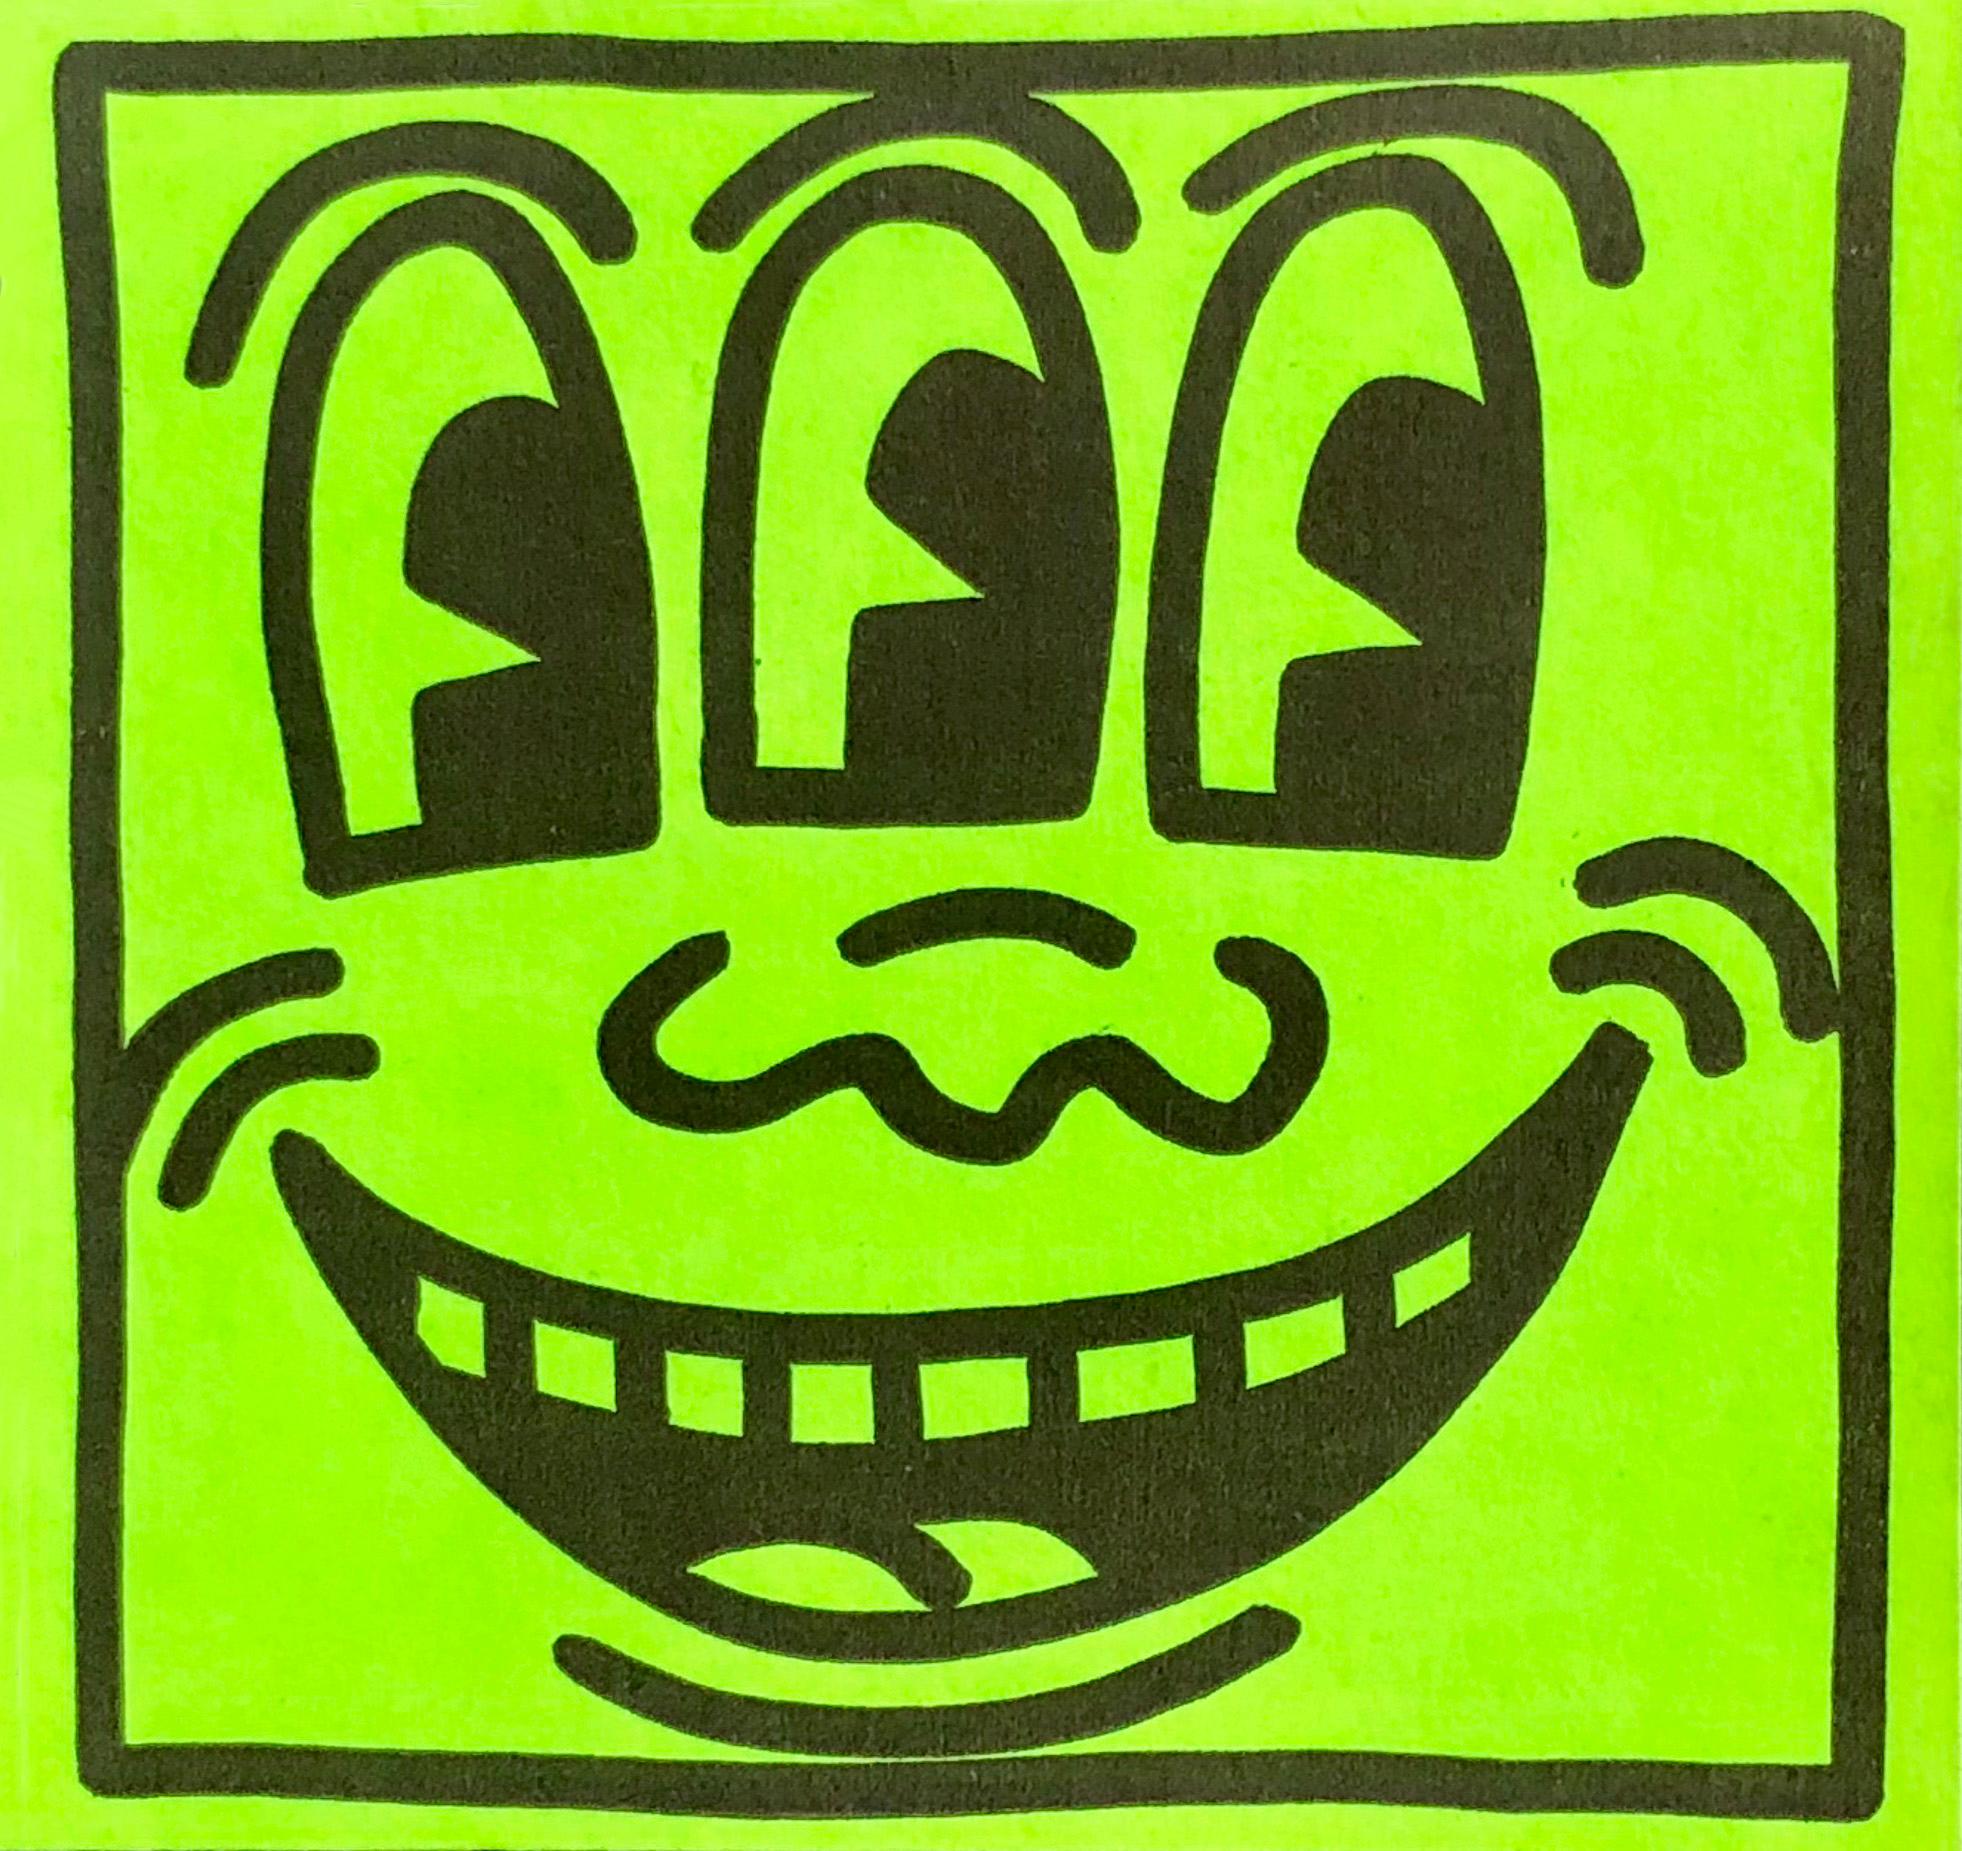 Autocollant de Keith Haring "Three Eyed Smiling" c. 1982 : Un objet de collection intemporel de Keith Haring, distribué à l'origine lors de la première exposition personnelle de Haring en 1982, puis vendu au Pop Shop de Haring vers le milieu des